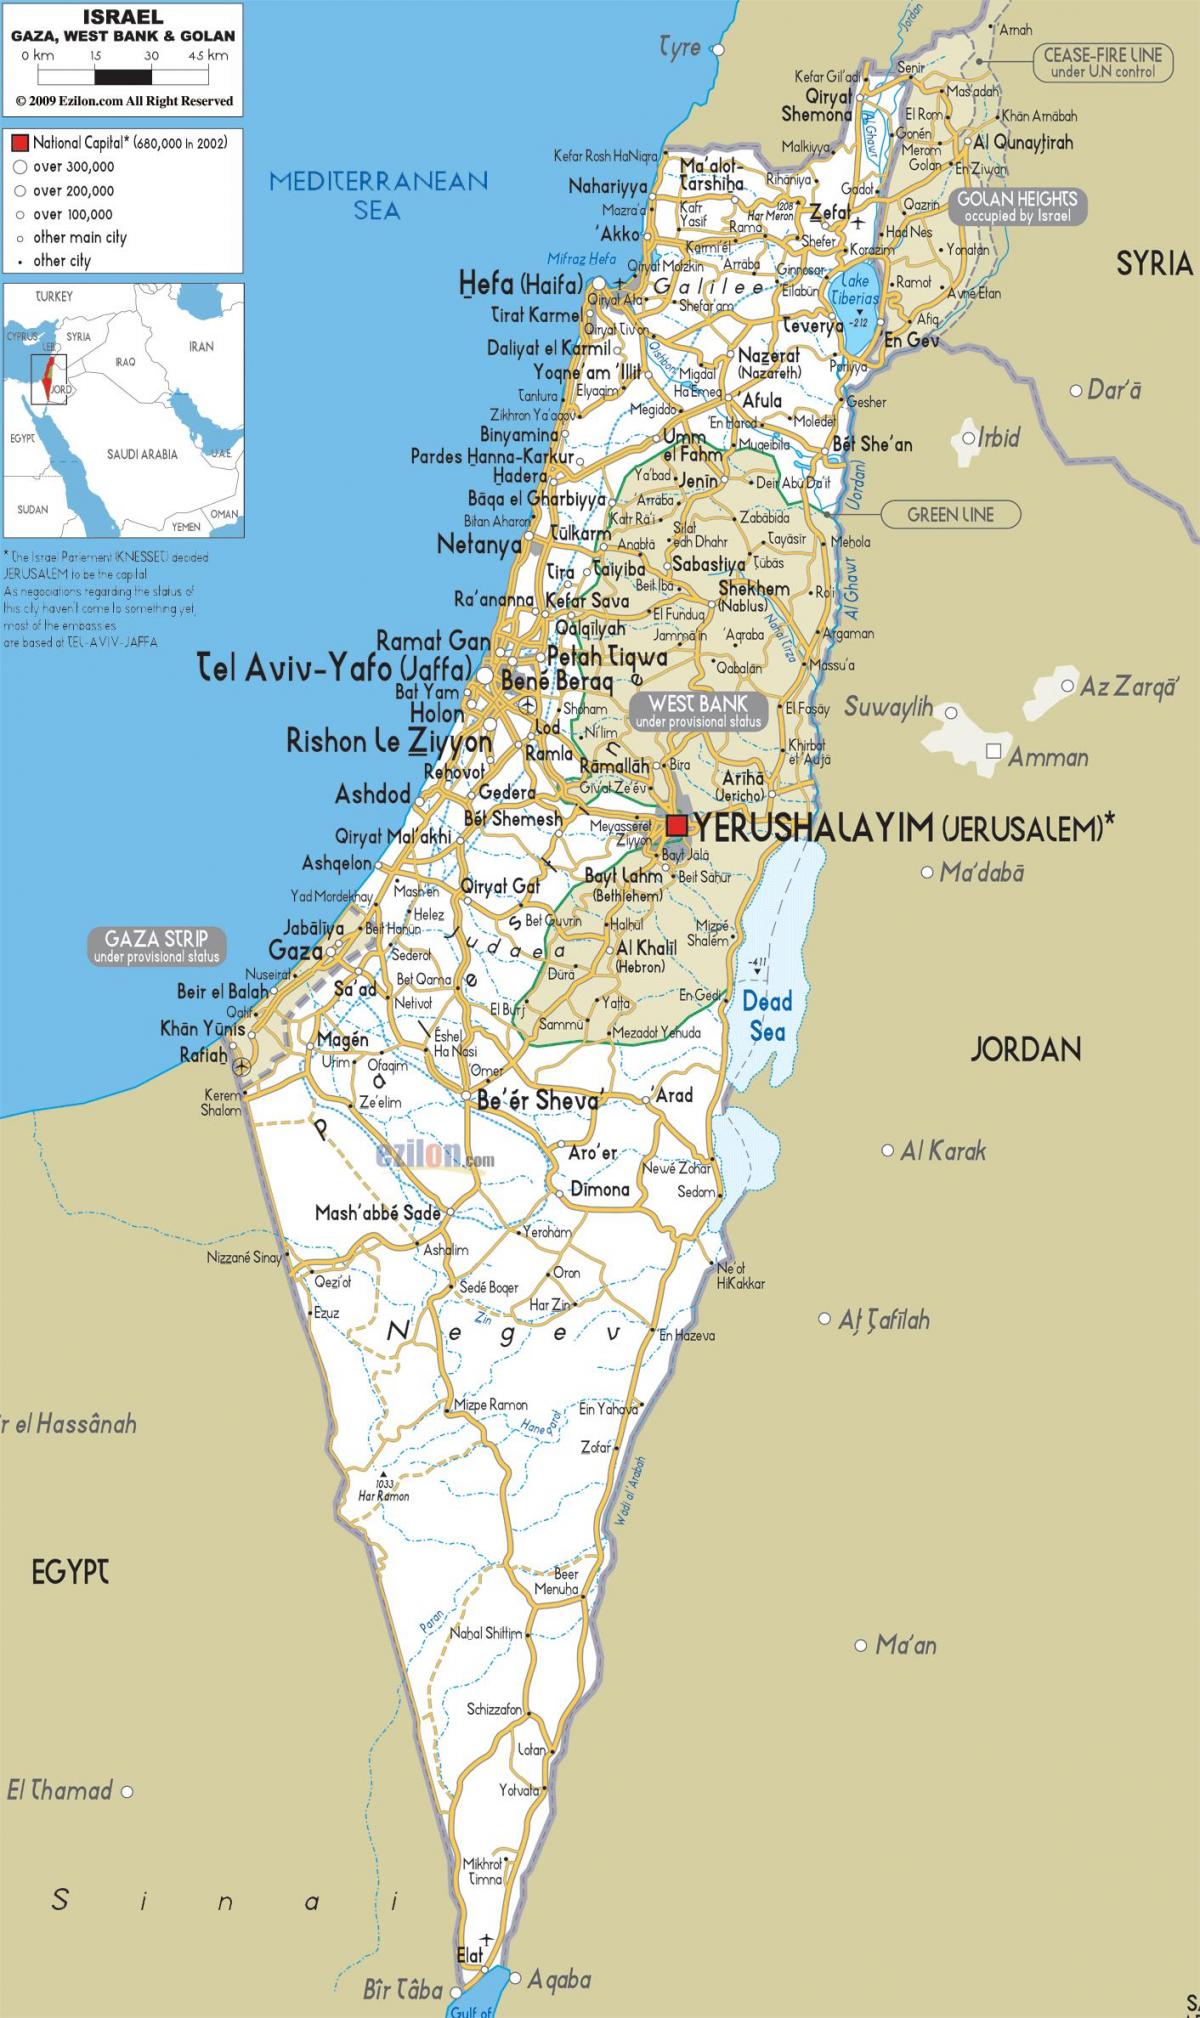 नक्शा इसराइल की सड़कों